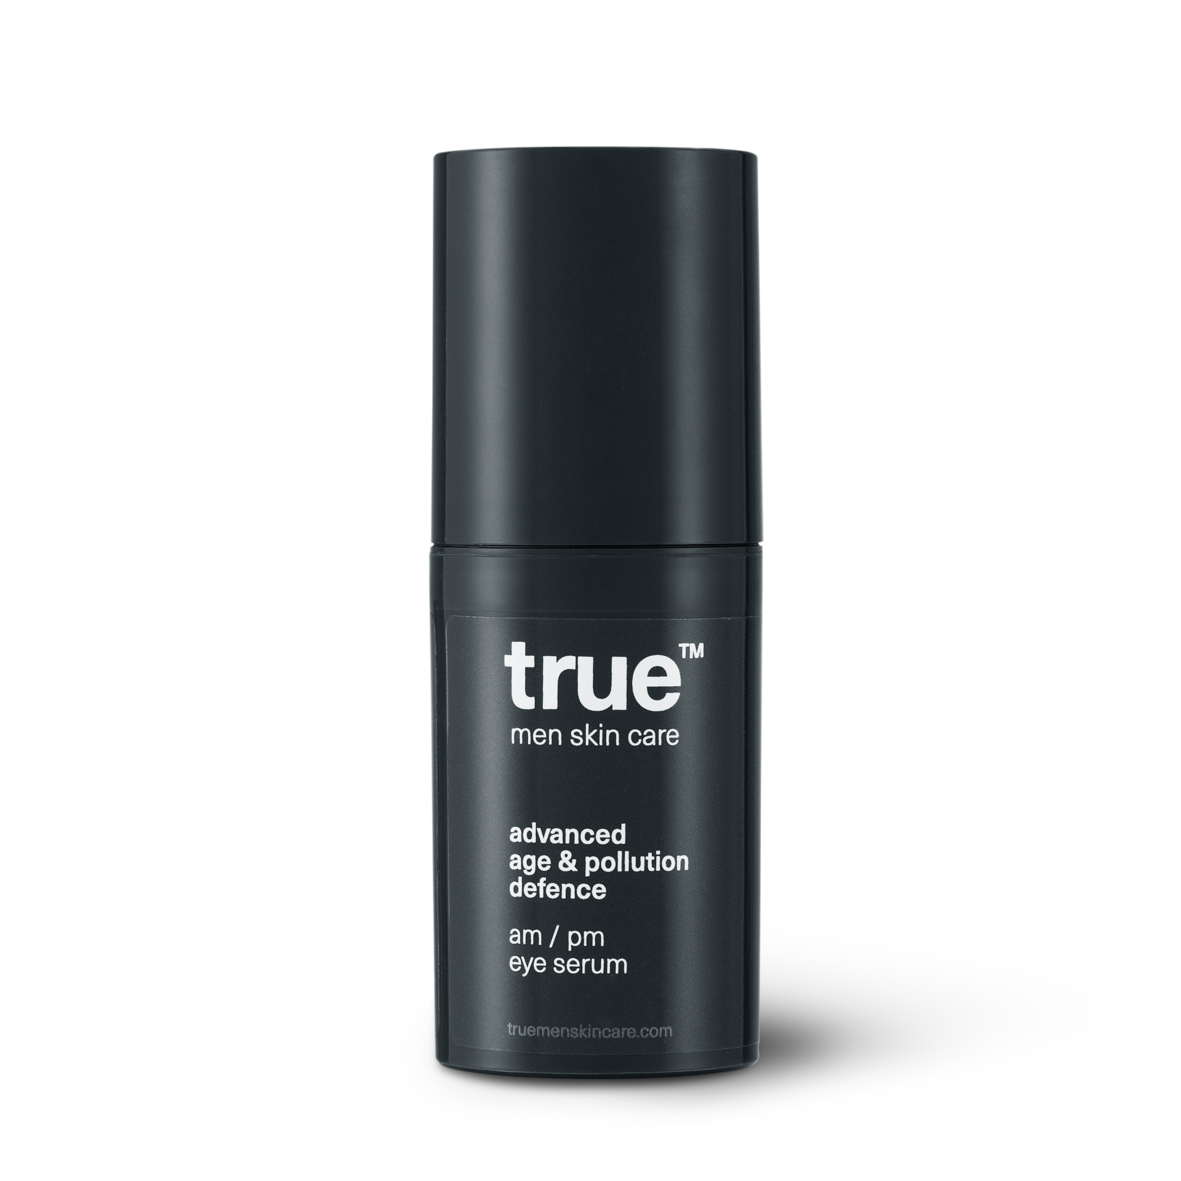 True men skin care - Zestaw premium - żel do mycia twarzy, kremy na dzień i na noc, serum pod oczy i kosmetyczka